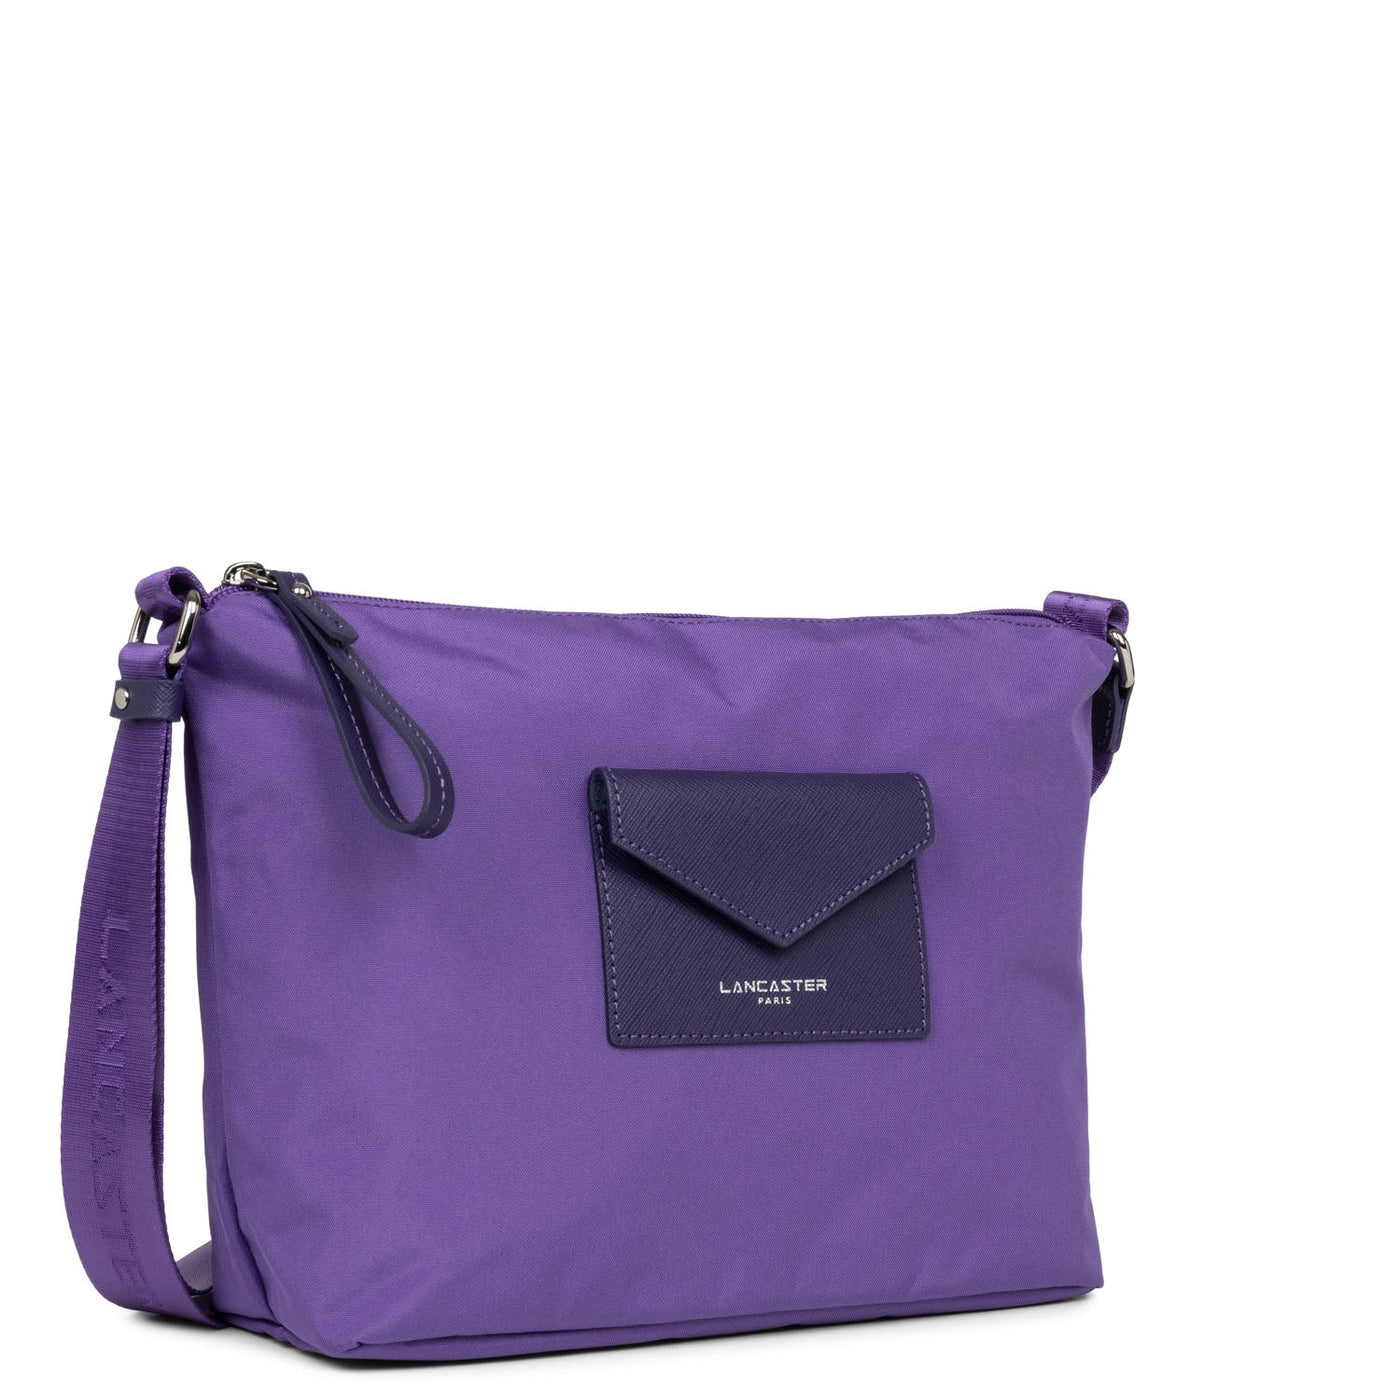 shoulder bag - smart kba #couleur_violet